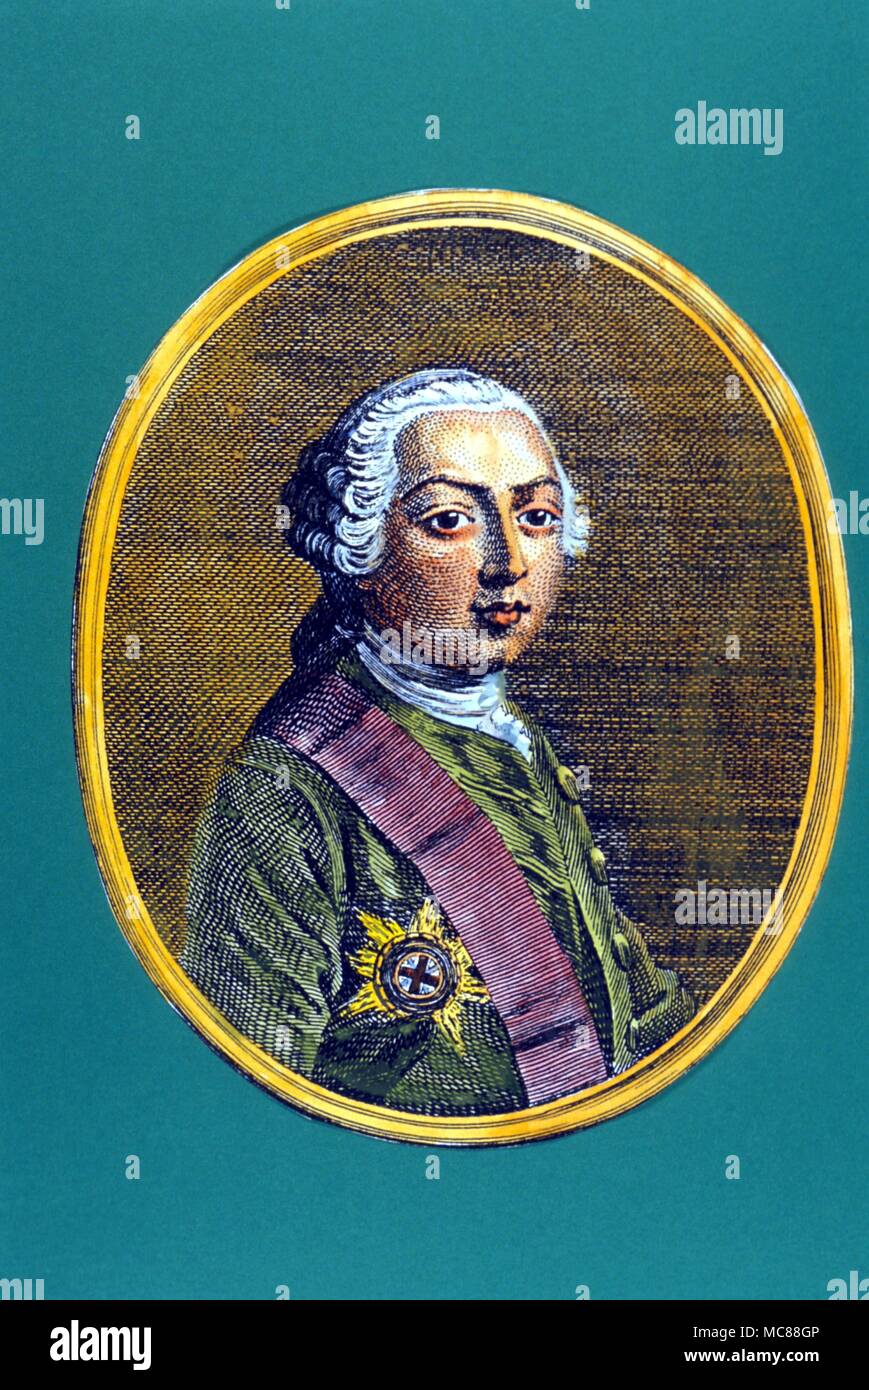 Storia - INGLESE - George III ritratto di George III - colorati a mano incisione di Grignion da 1753 edizione di Smollett "Storia dell'Inghilterra". Foto Stock